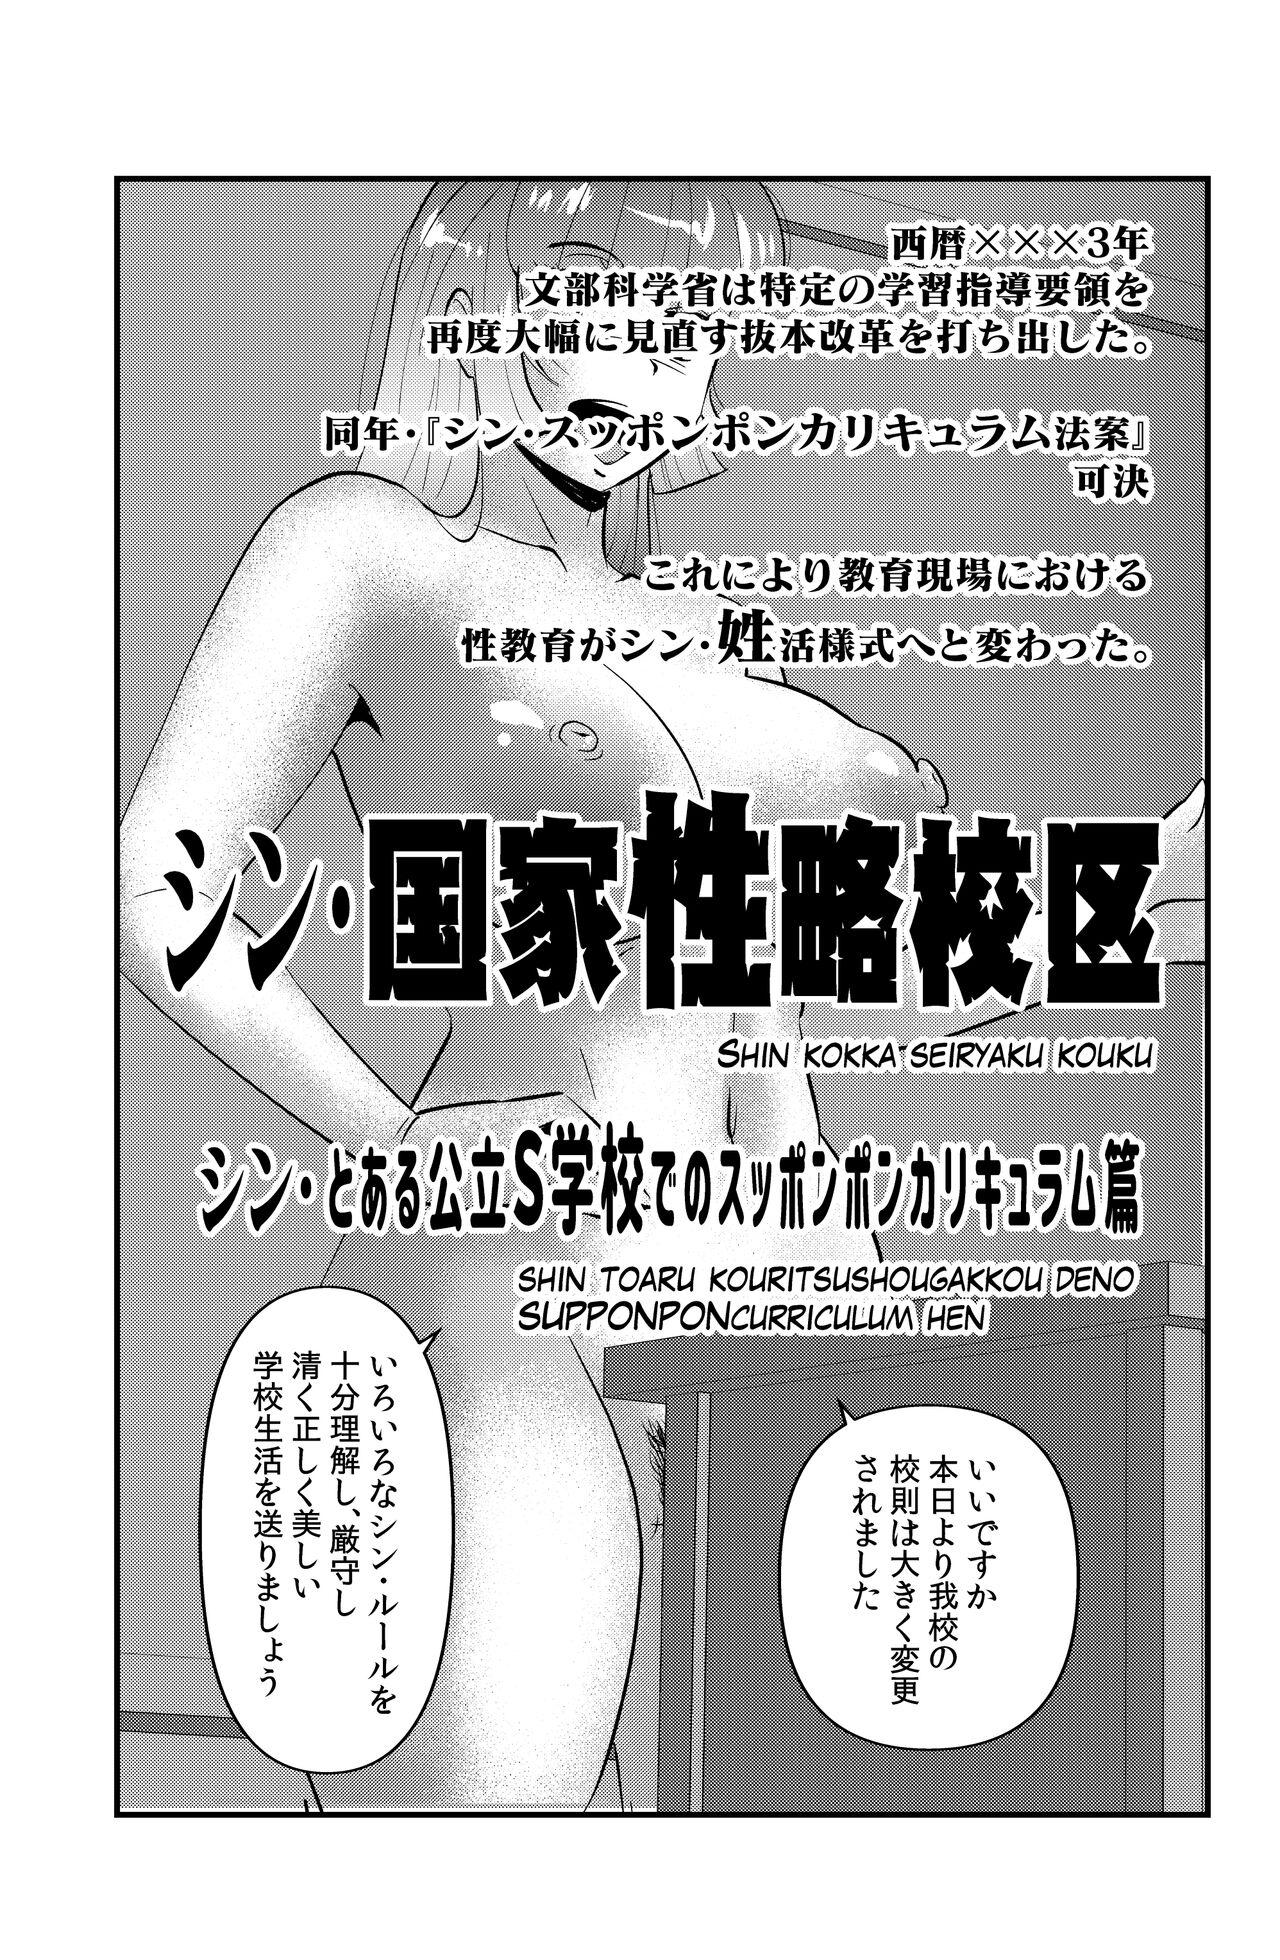 Masterbate Shin Kokka Seiryaku Kouku - Original Sentones - Page 1